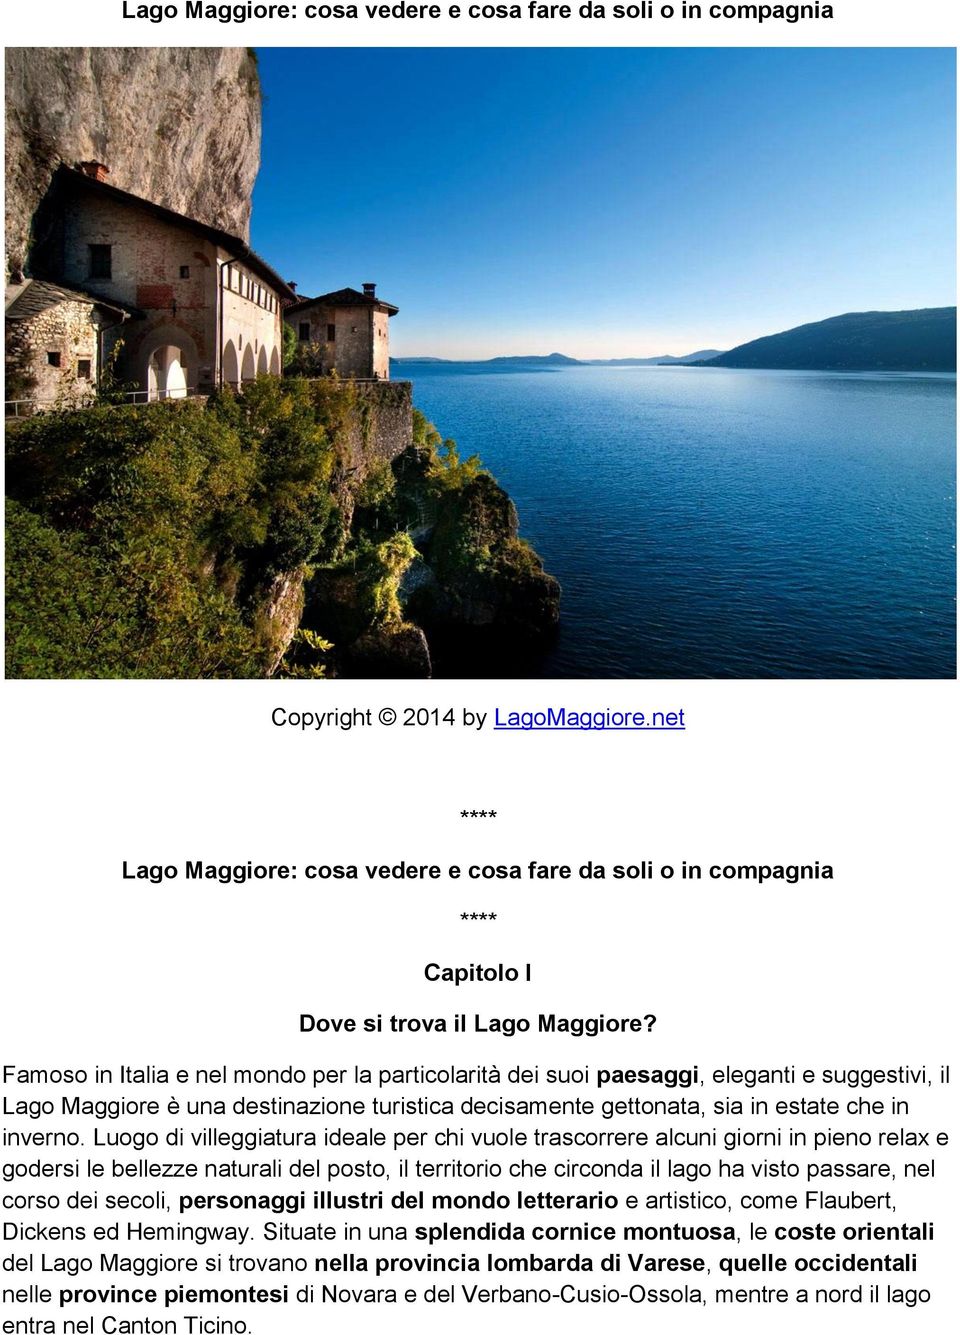 Famoso in Italia e nel mondo per la particolarità dei suoi paesaggi, eleganti e suggestivi, il Lago Maggiore è una destinazione turistica decisamente gettonata, sia in estate che in inverno.